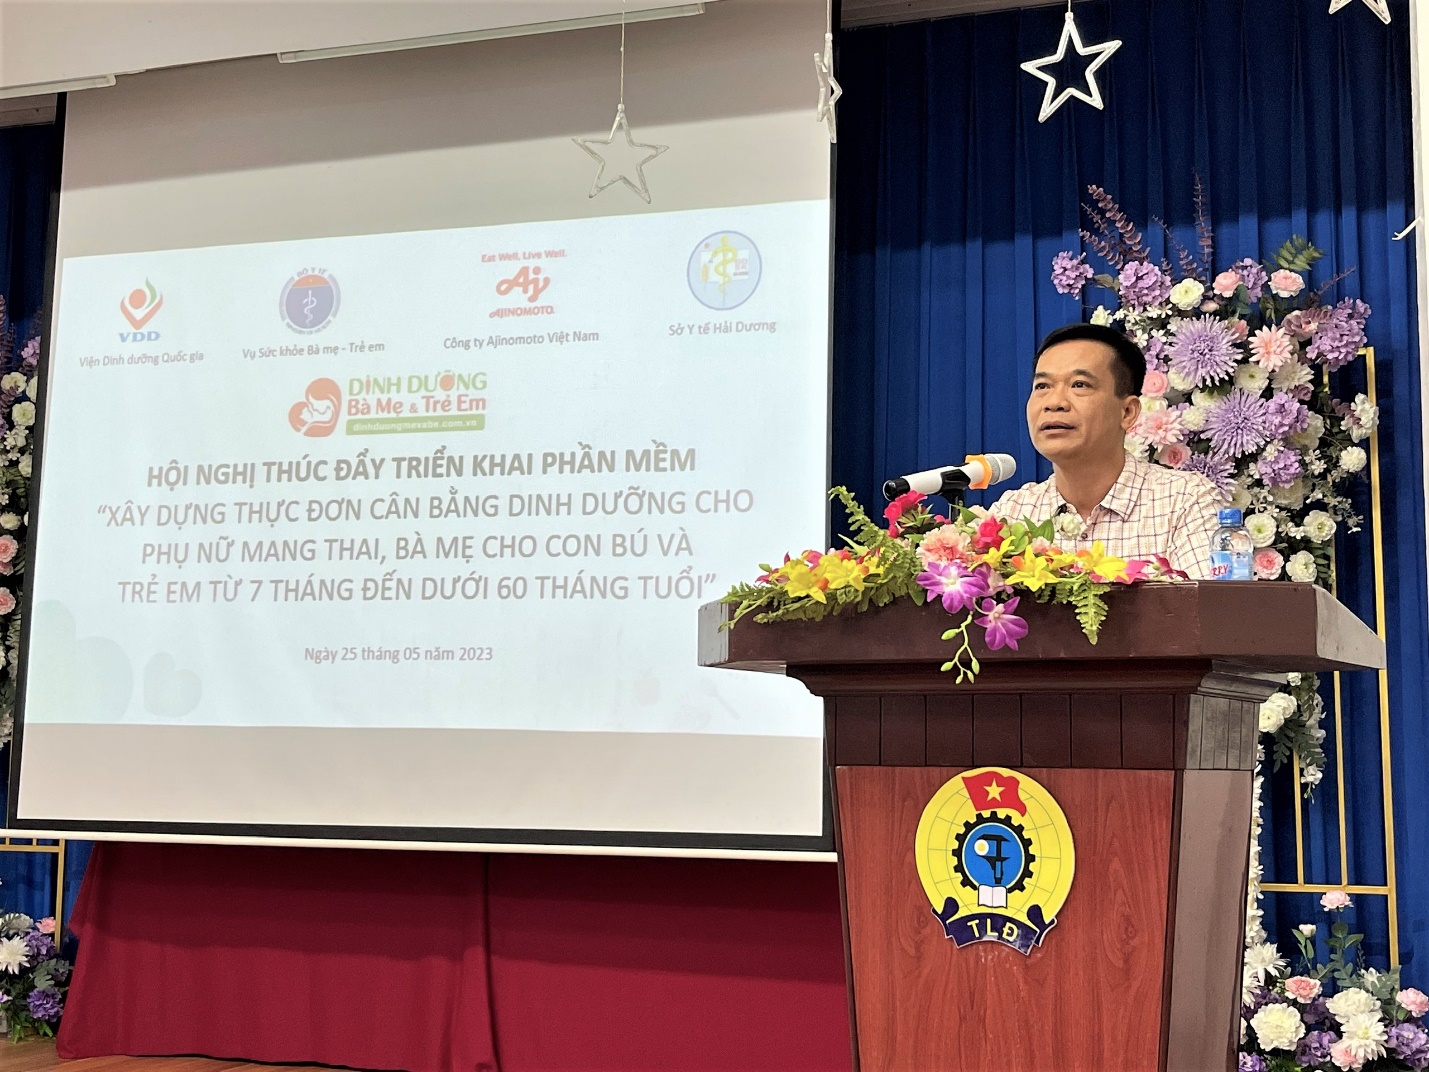 Tiến sĩ Trần Đăng Khoa - Phó vụ trưởng Vụ Sức khỏe bà mẹ và trẻ em phát biểu tại hội nghị ngày 25/5 tại Hải Dương - Ảnh: Ajinomoto cung cấp